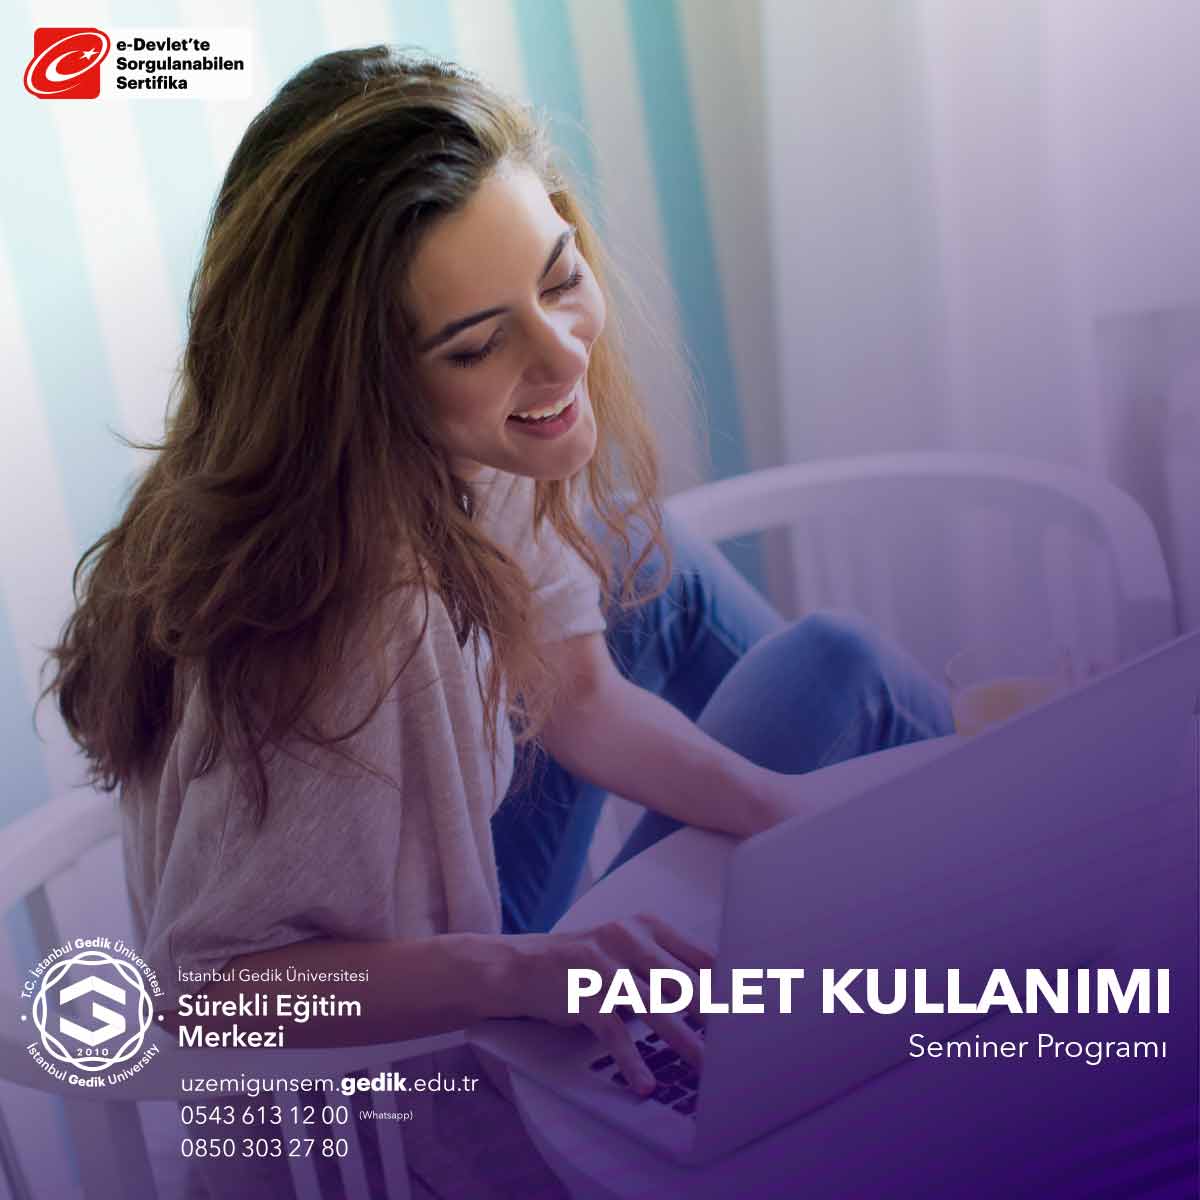 Padlet Kullanımı Semineri, katılımcılara bu çevrimiçi işbirliği platformunu etkili bir şekilde kullanarak öğrenme ve işbirliği deneyimlerini geliştirmeyi öğrenme fırsatı sunar.